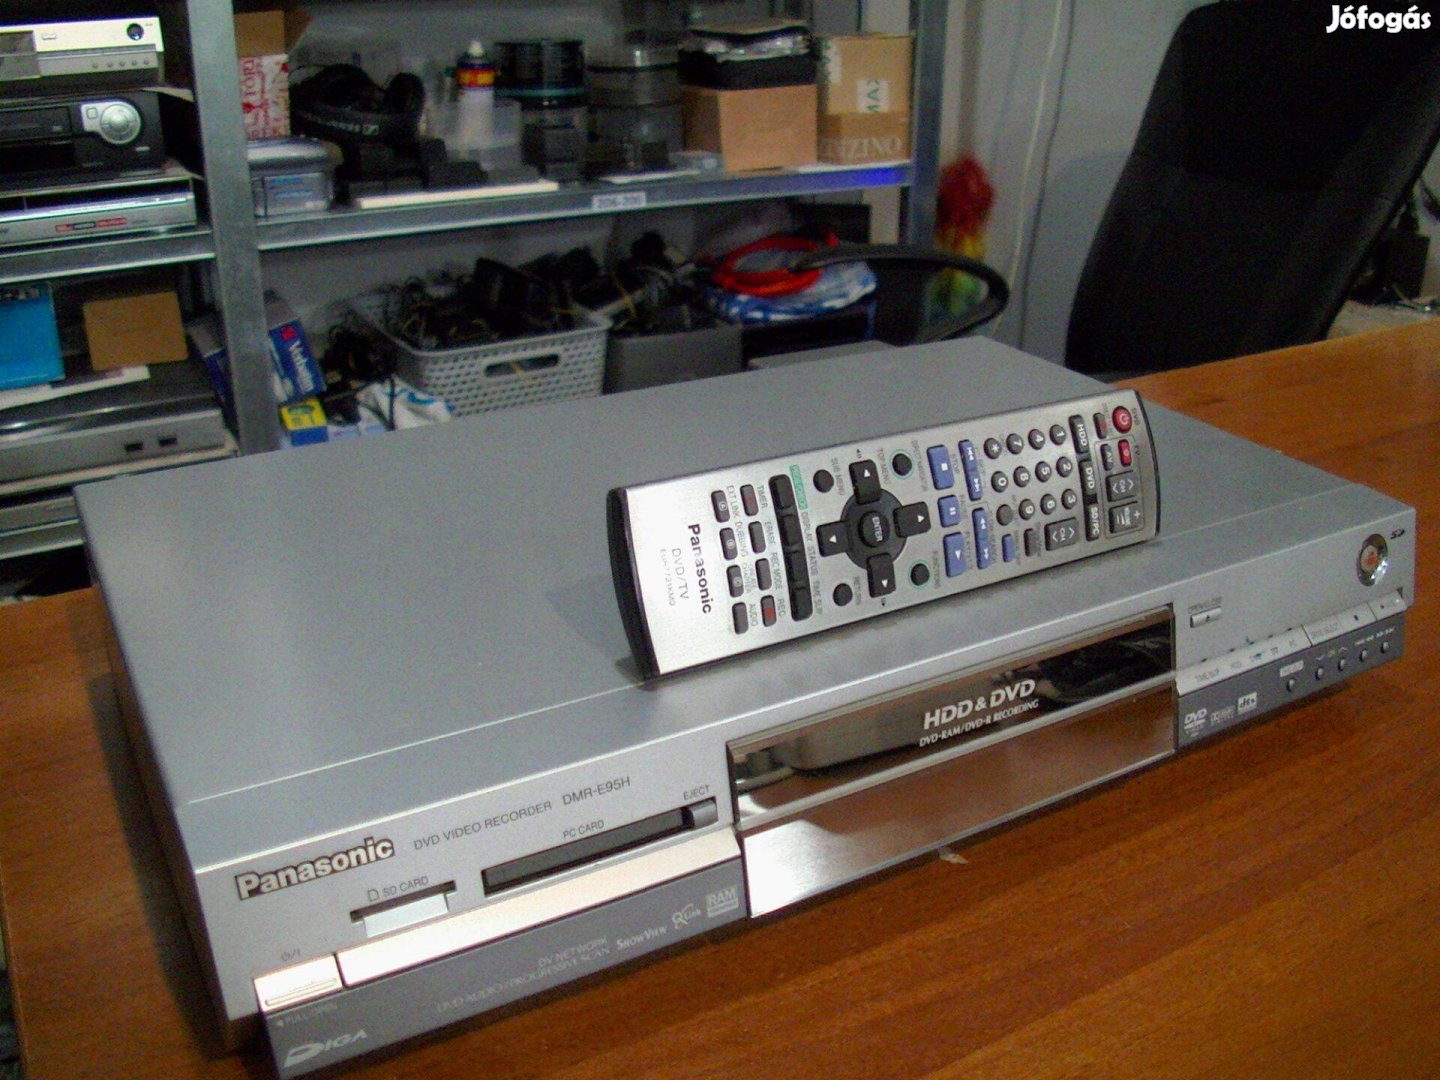 Panasonic DMR-E95 HDD/DVD Recorder